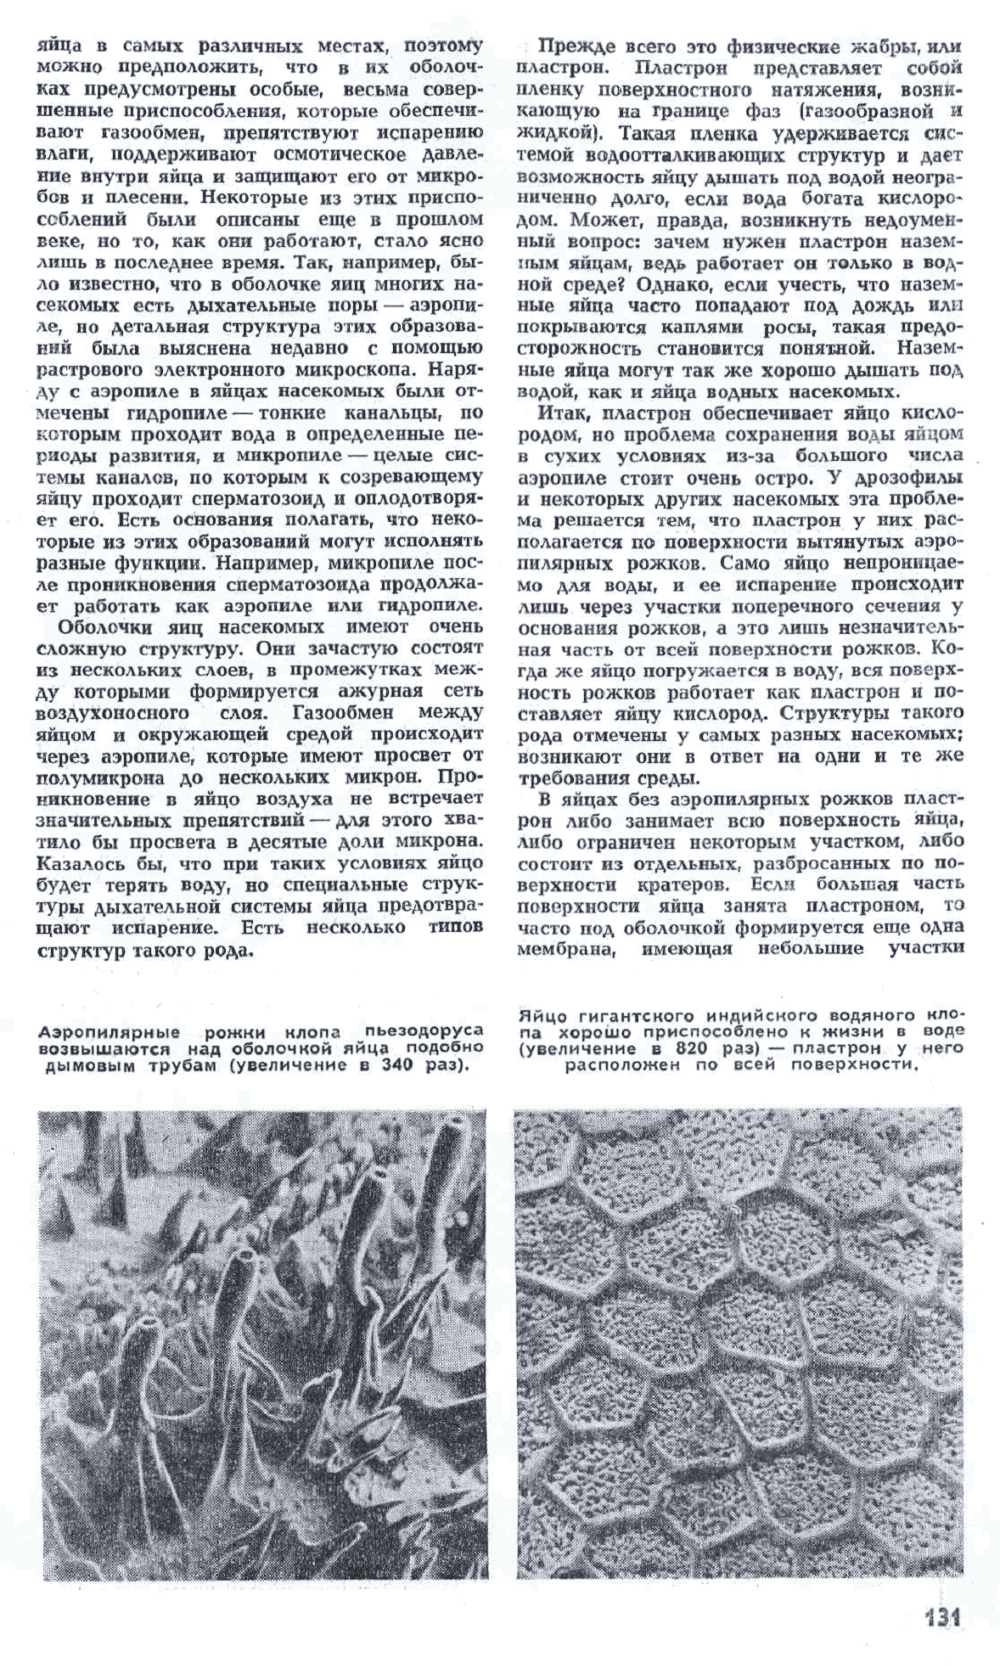 Маленькие секреты насекомых. Ю. Захваткин. Наука и жизнь, 1972, №5, с.130-133. Фотокопия №2